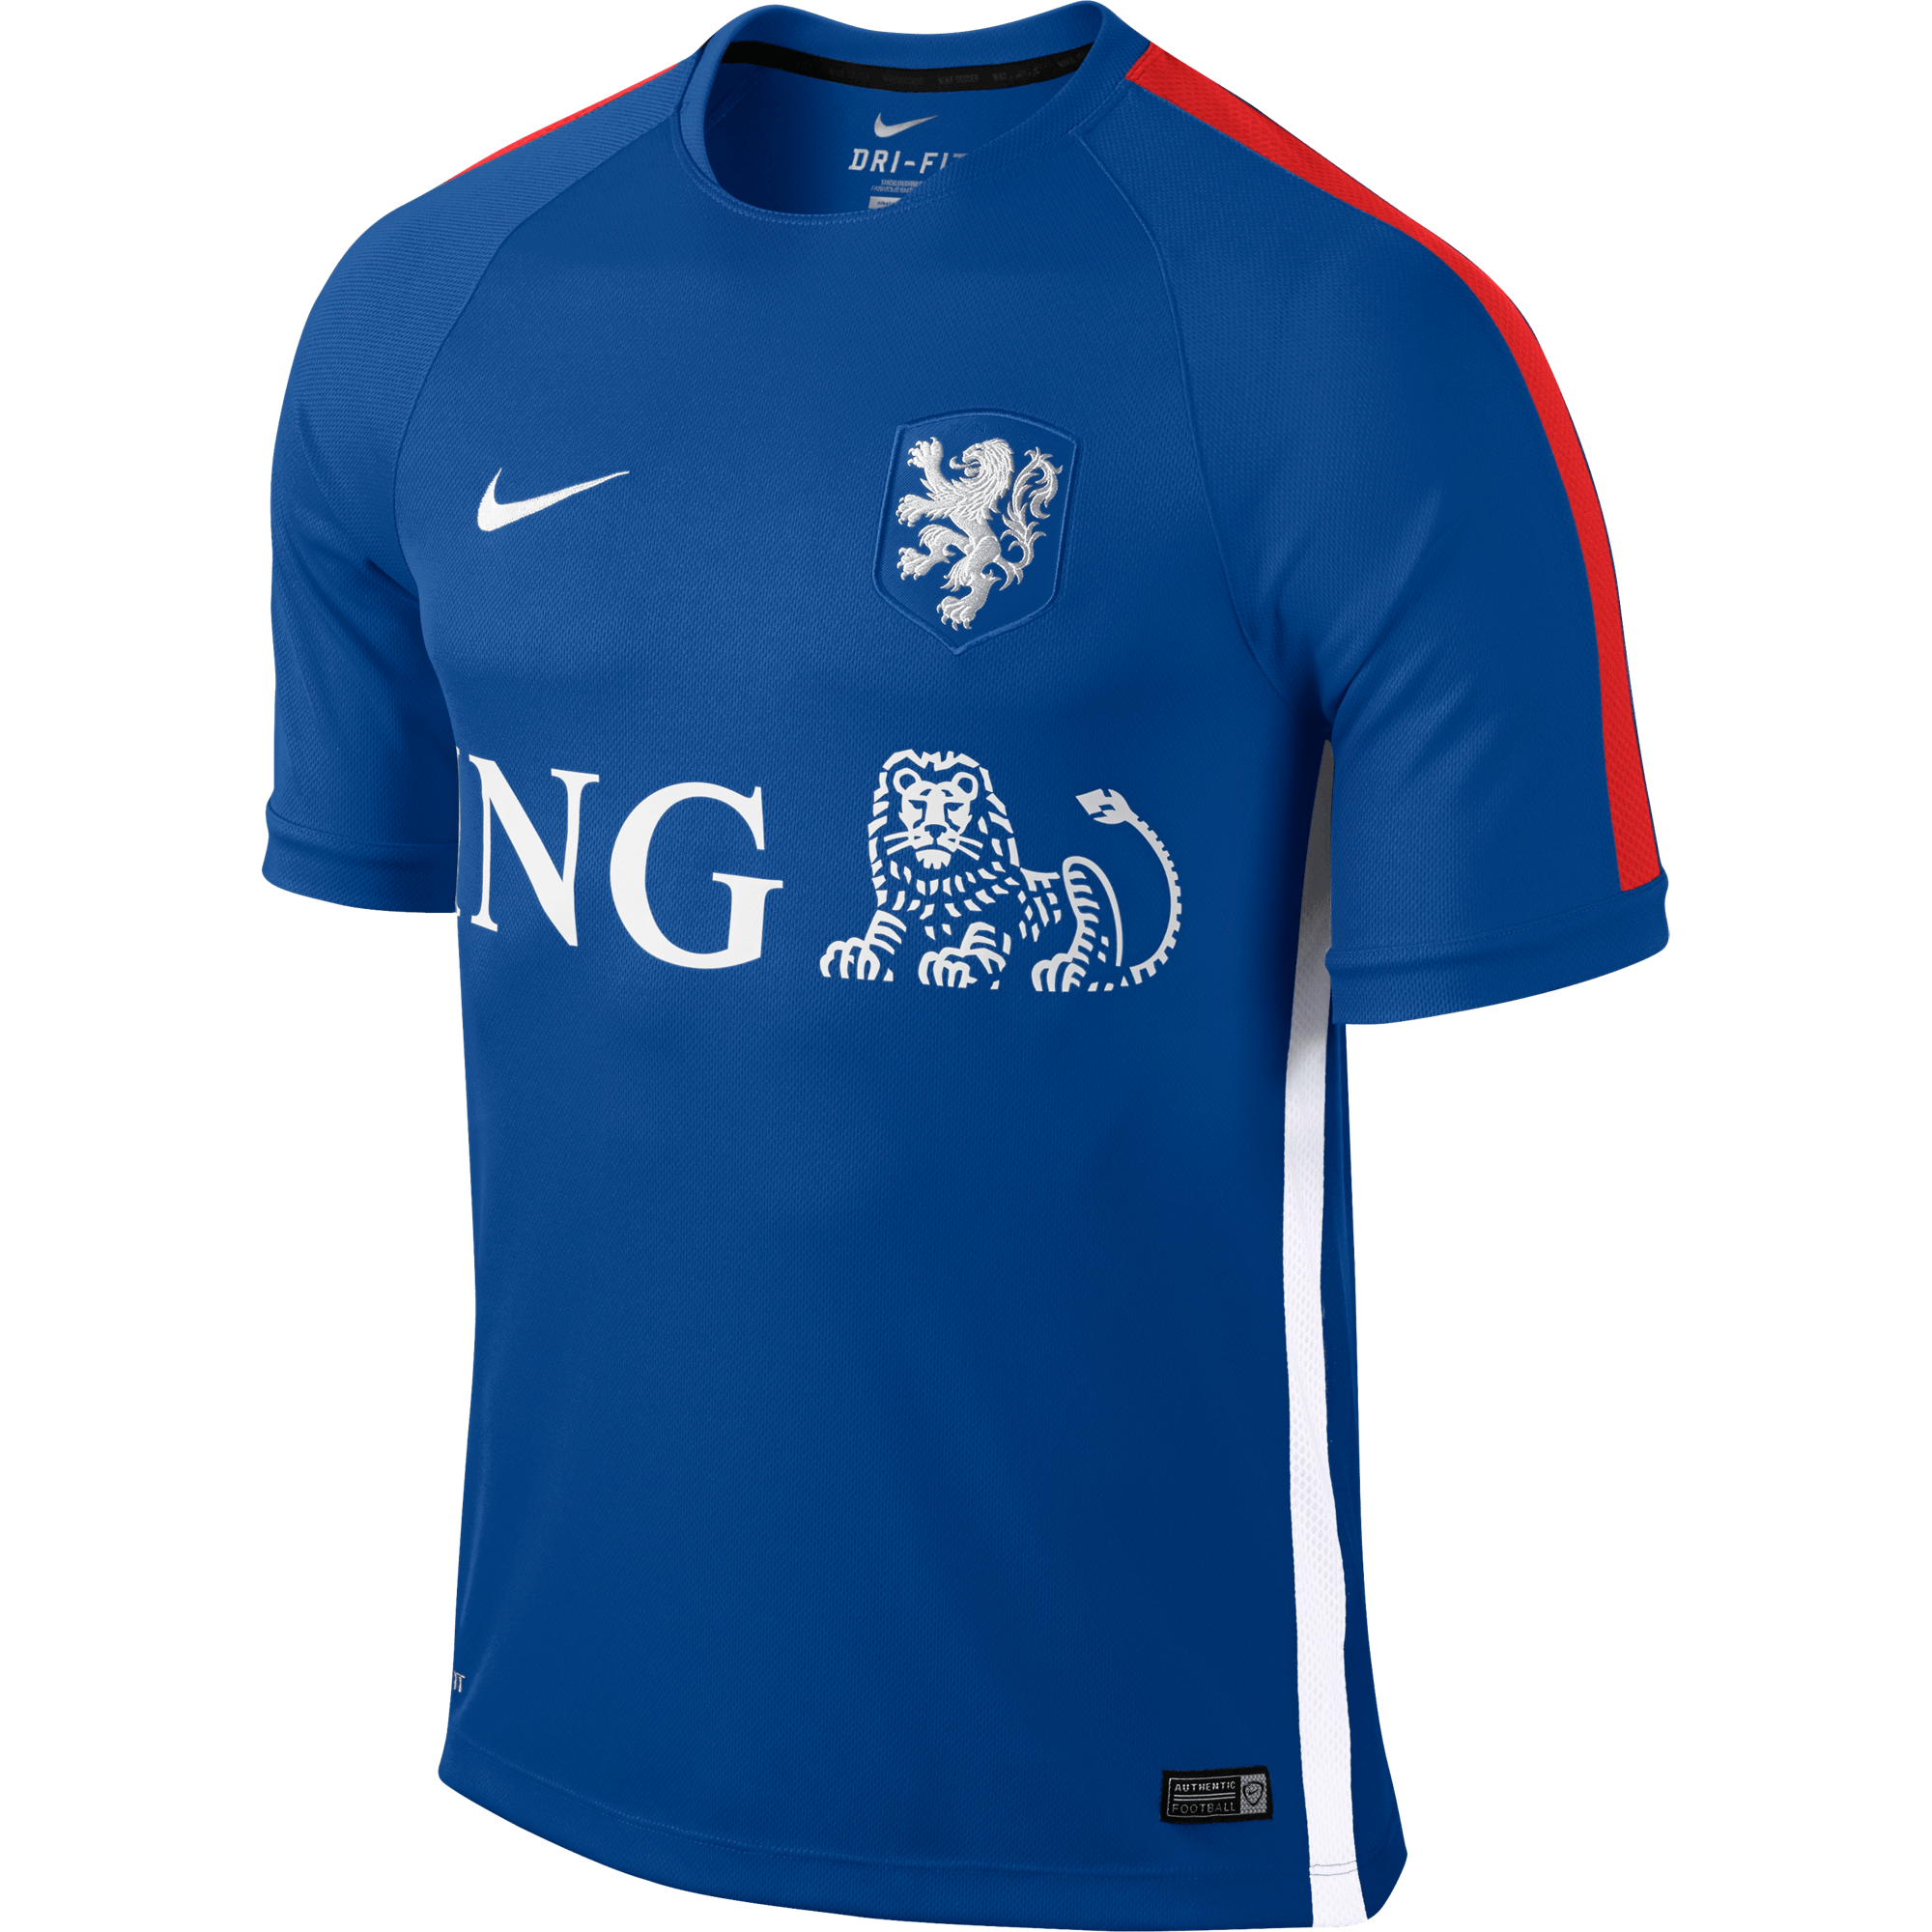 je bent diefstal toernooi Nederlands Elftal prematch shirt - Footballshop.nl